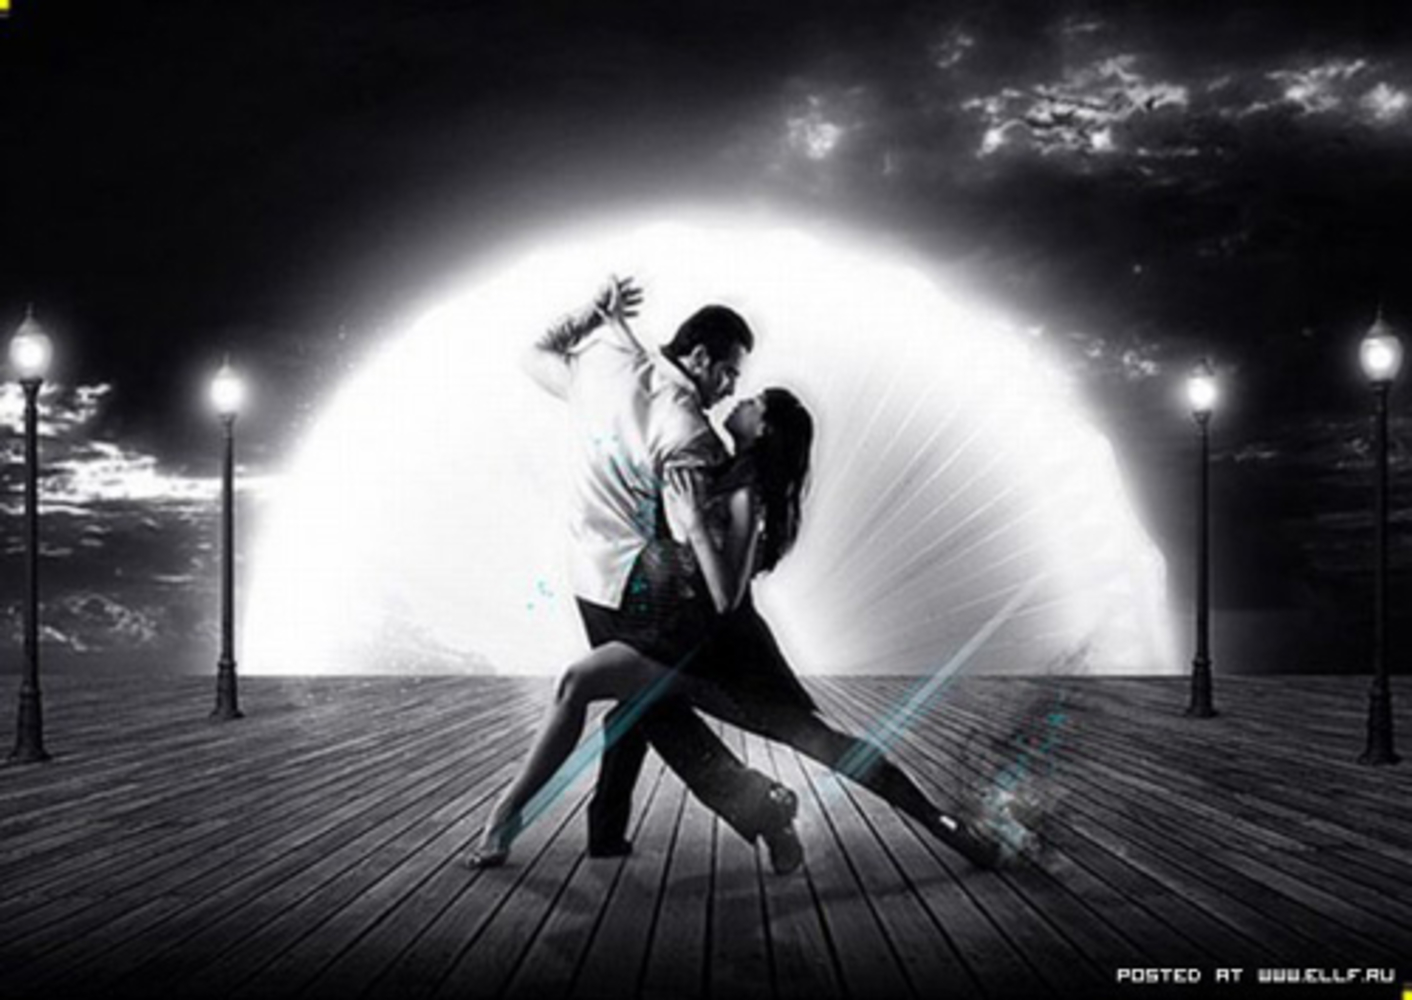 Танец пары под песню. Романтический танец. Пара танцует. Танцующая пара в темноте. Влюбленные в танце.